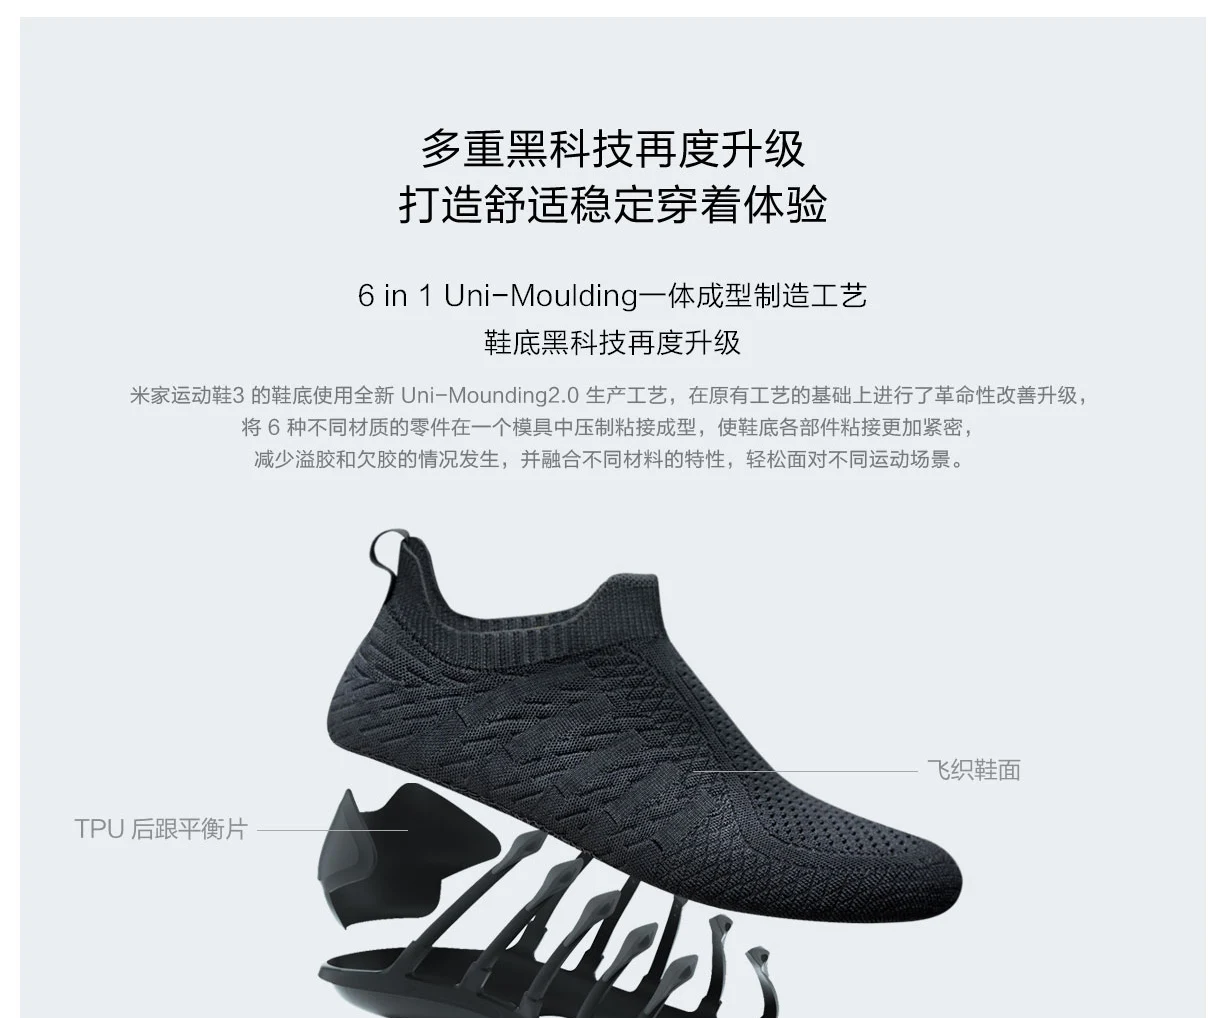 Xiaomi Mijia кроссовки 3 мужские уличные спортивные Uni-moulding 3D Fishbone Lock системы Вязание верхней мужские кроссовки